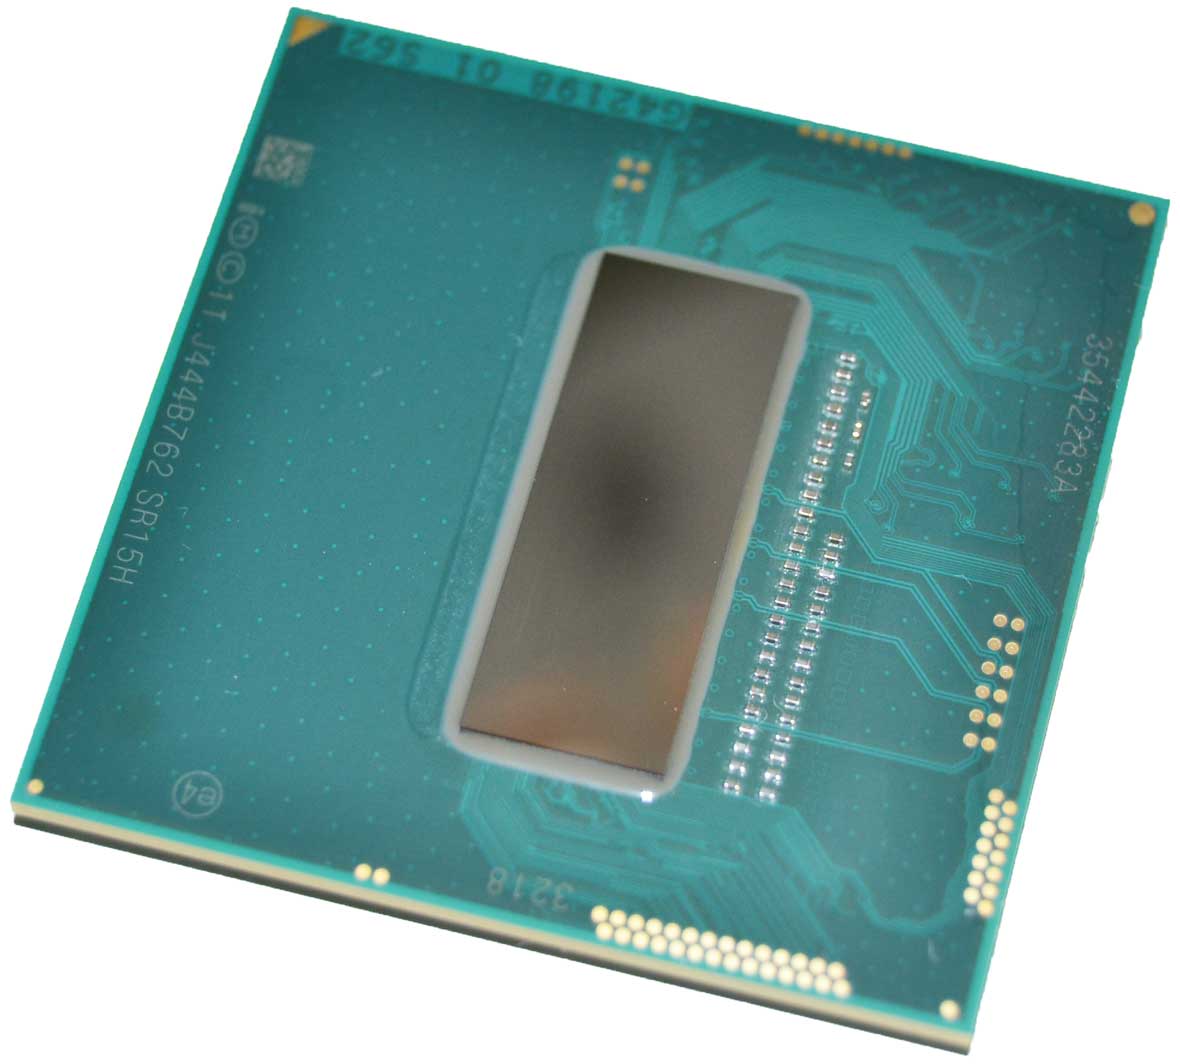 Toshiba A000240370 2.40Ghz 5GT/s PGA946 6MB Intel Core i7-4700MQ Quad-Core  CPU Processor CPU Medics